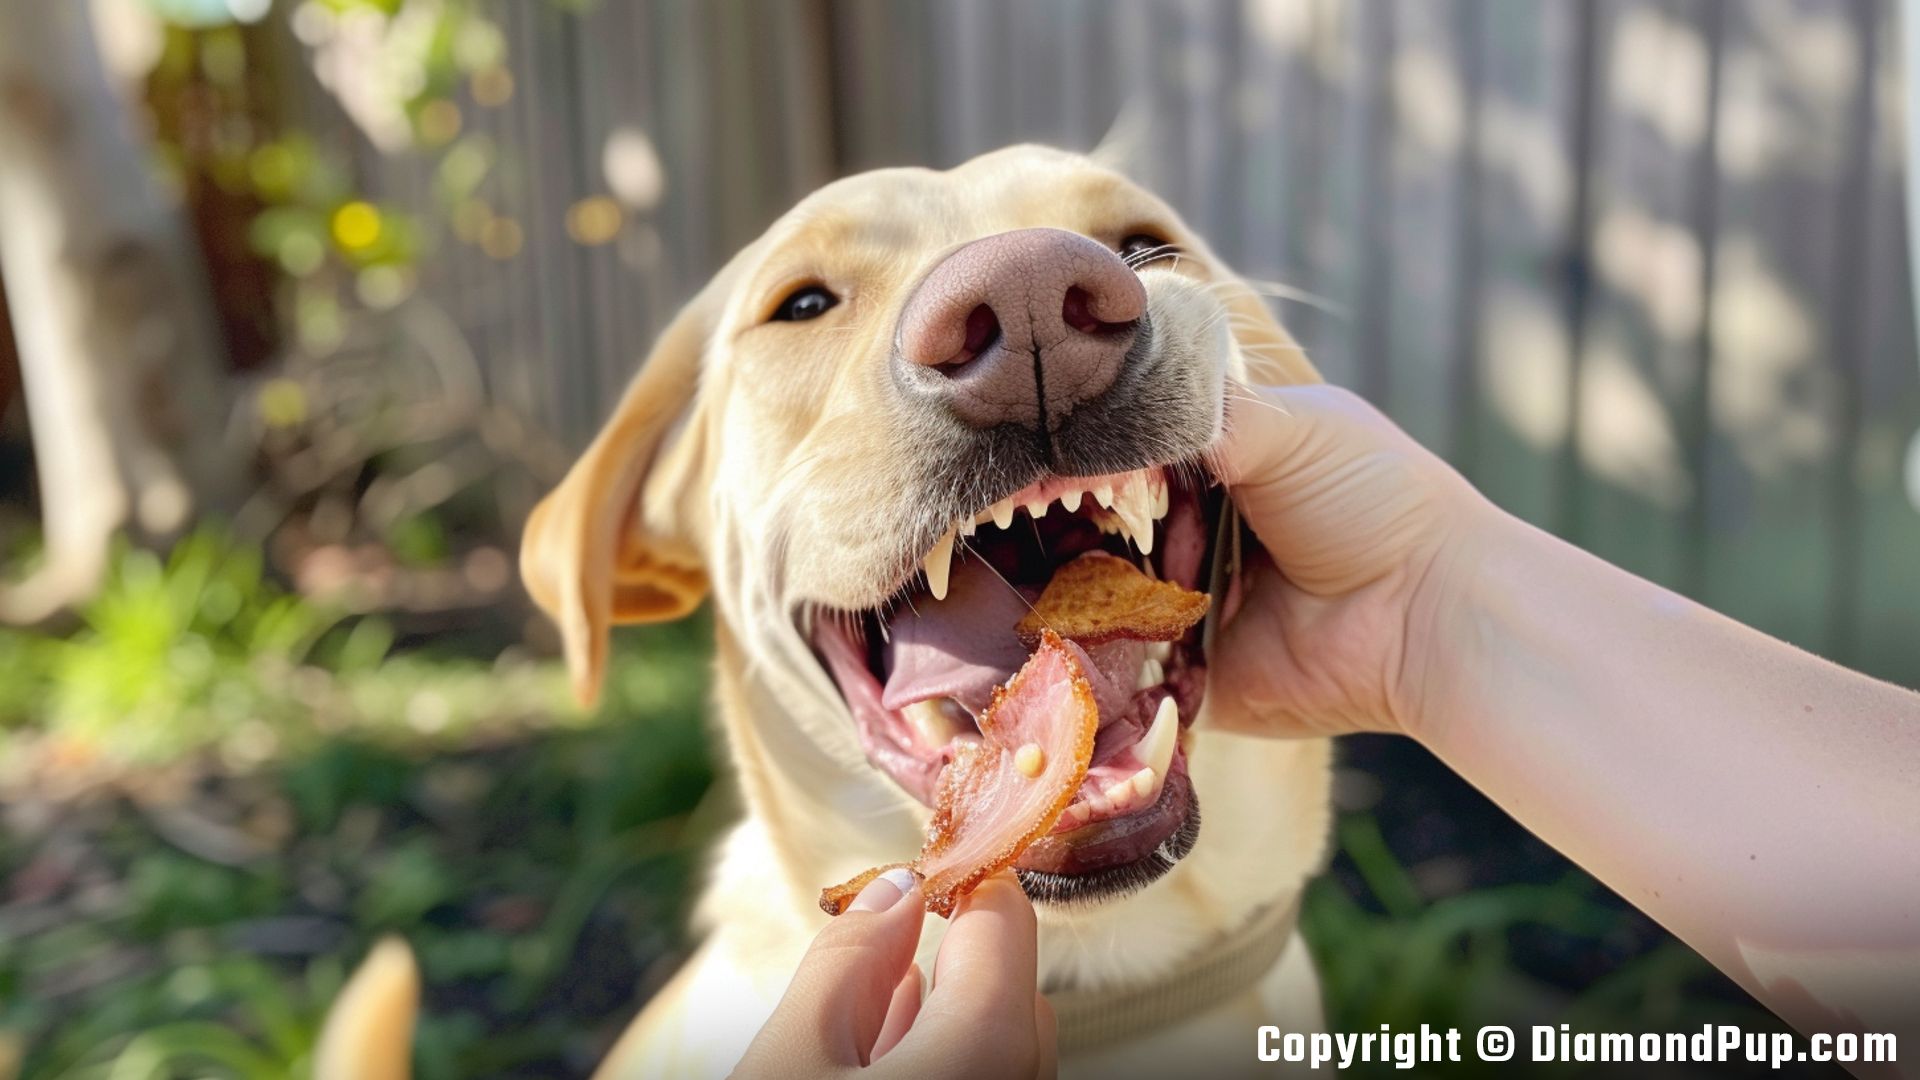 Photograph of Labrador Eating Bacon